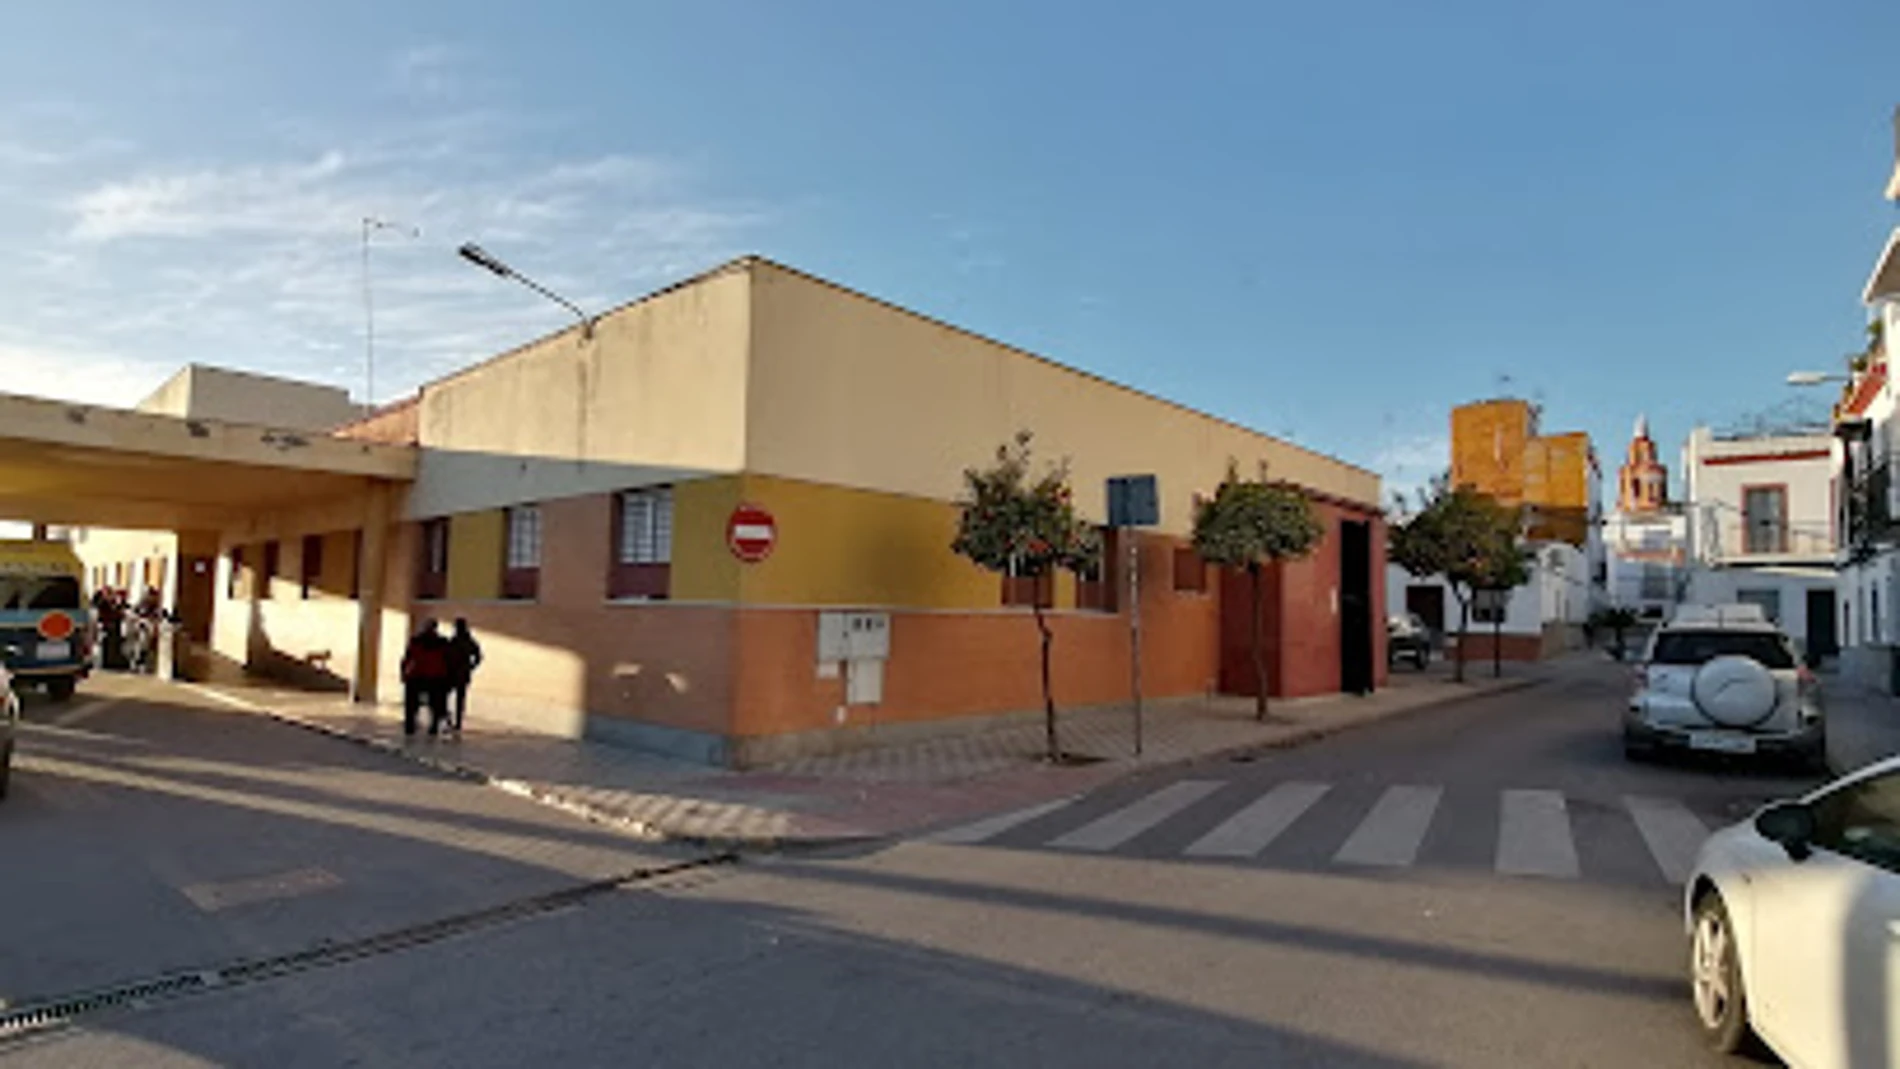 Centro de salud de los Palacios (Sevilla) donde se produjeron los hechos